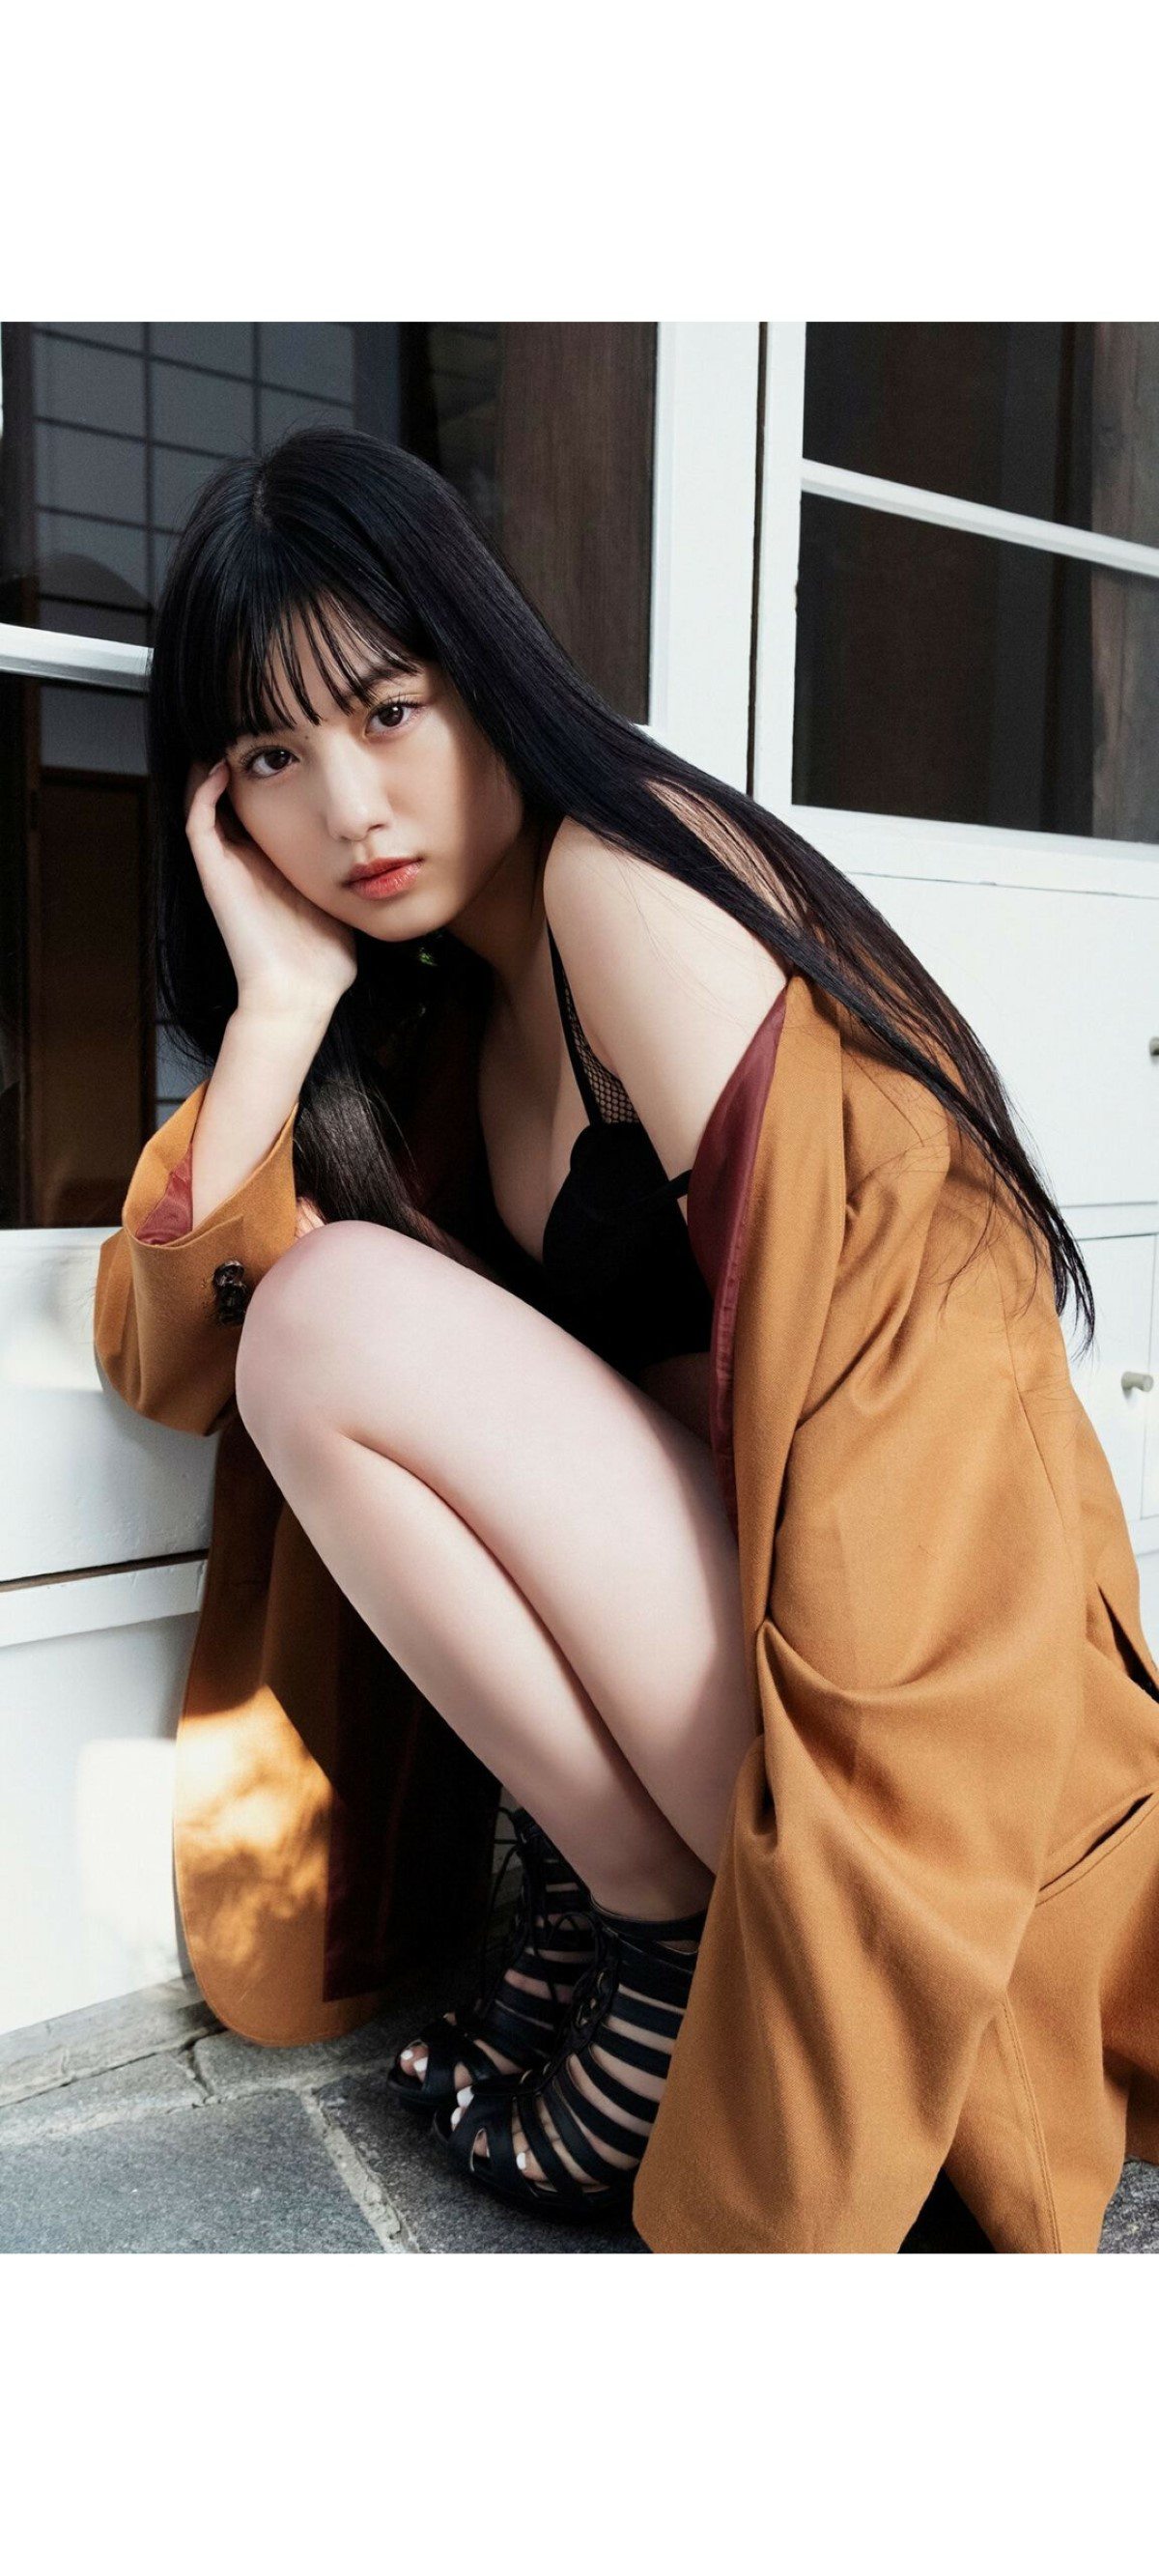 Weekly Photobook 2020 12 07 Noa Tsurushima 鶴嶋乃愛 A natural actress 生まれながらにして女優 008 9768247321.jpg